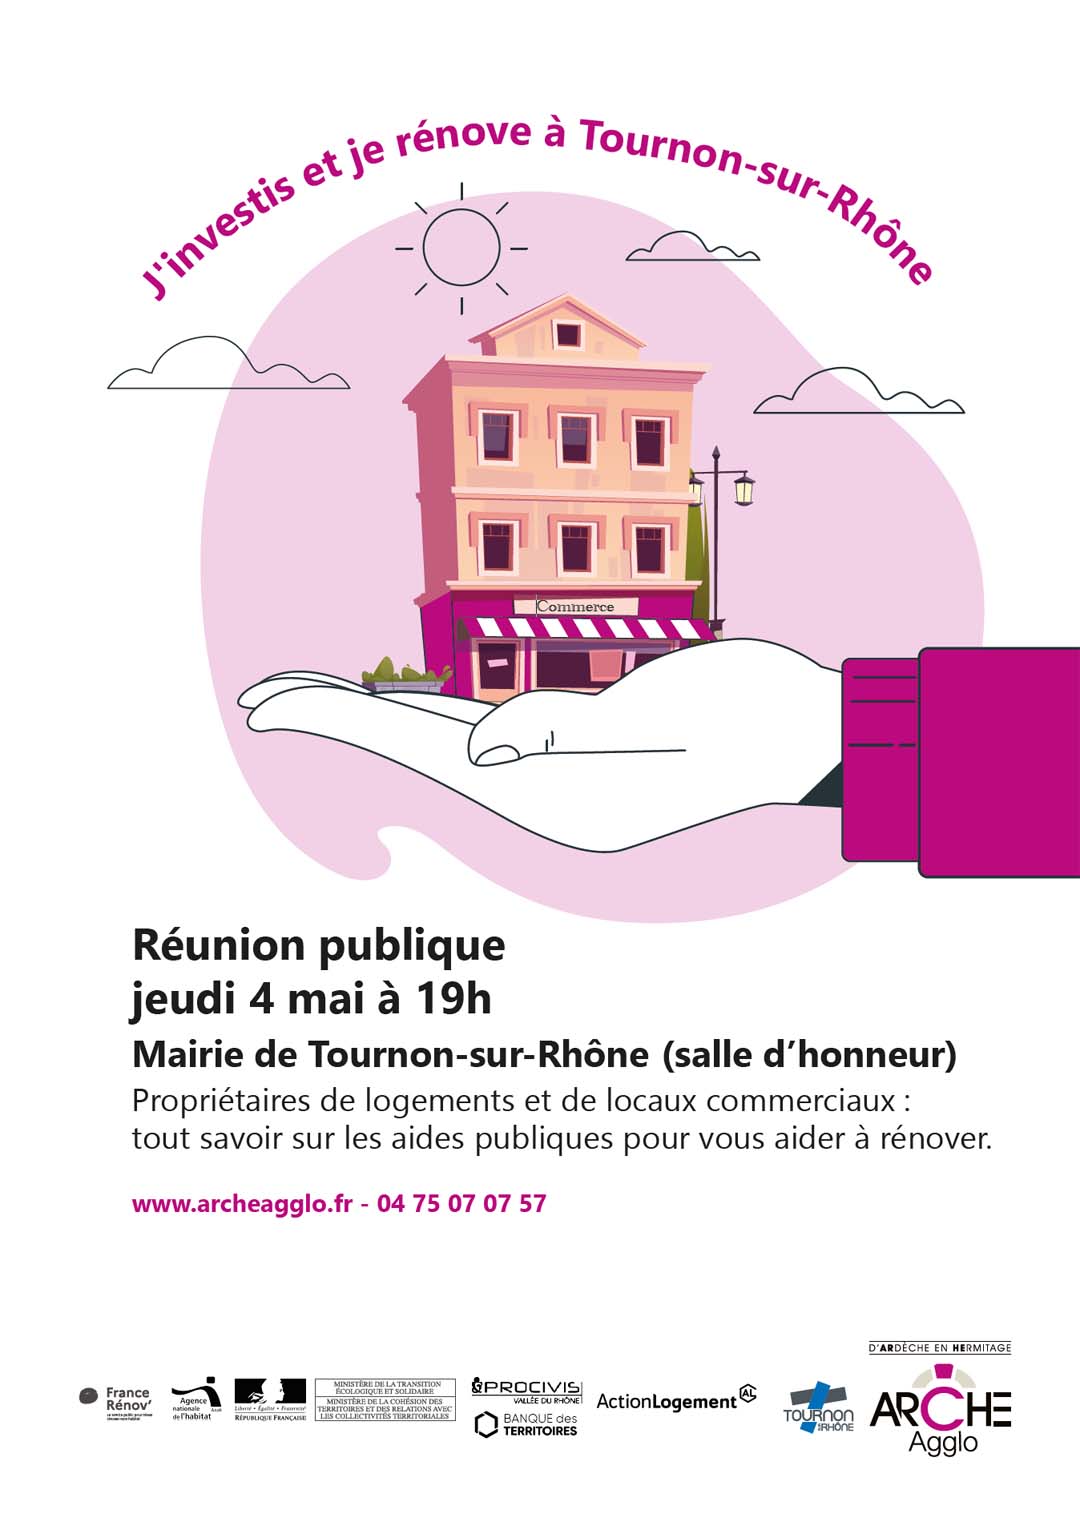 RÉUNION PUBLIQUE PROPRIÉTAIRES LOGEMENTS ET LOCAUX COMMERCIAUX. Jeudi 4 mai à 19h - Mairie de Tournon-sur-Rhône.